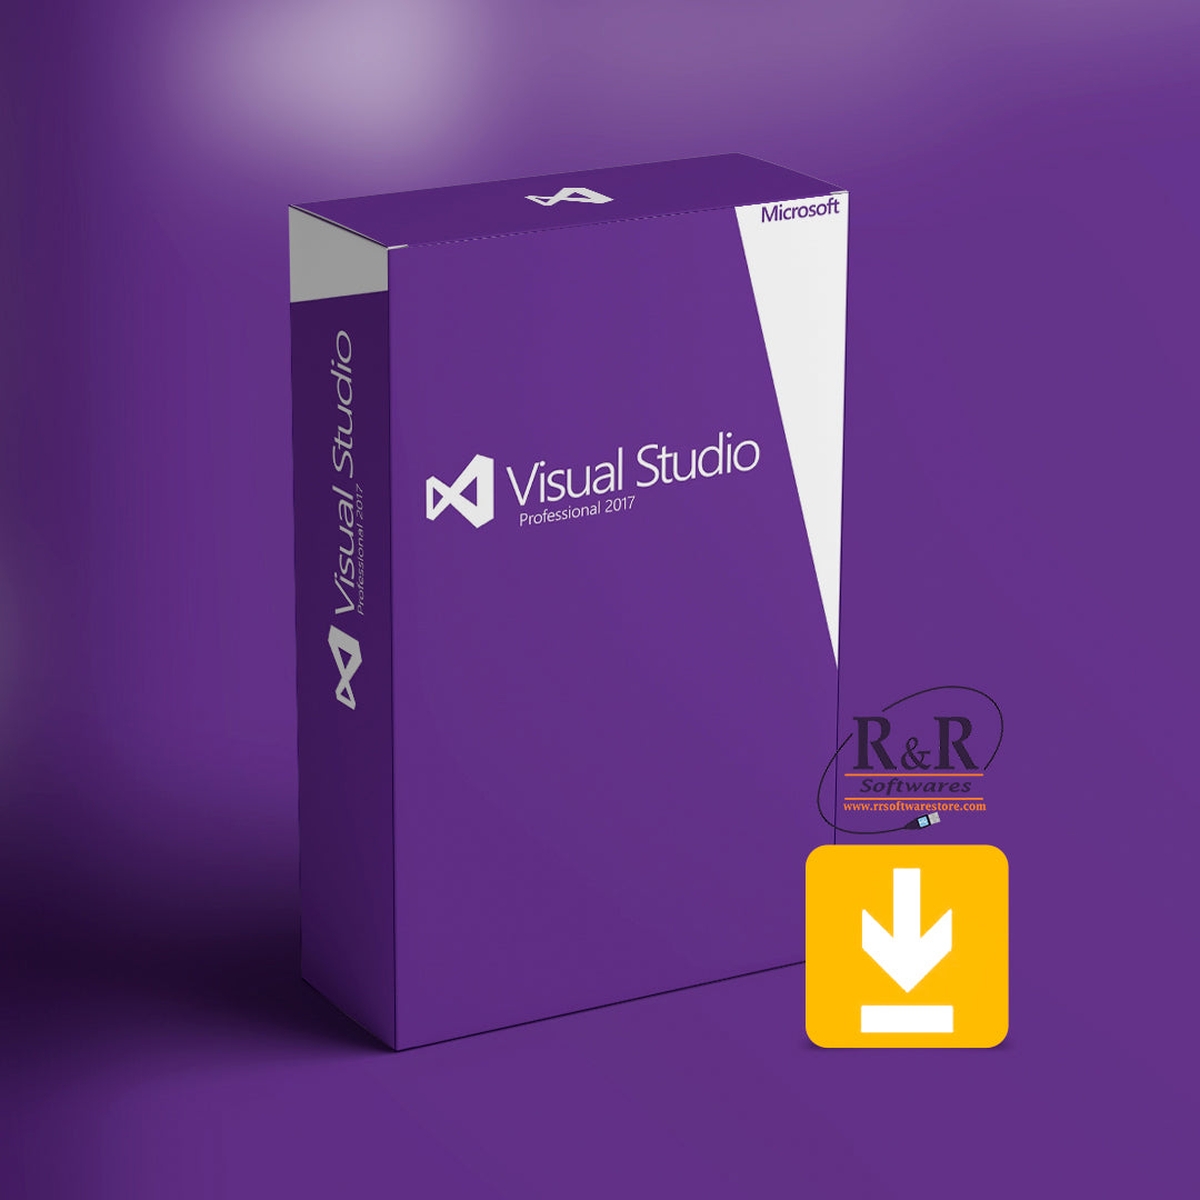 Visual Studio 2017 Professional ESD - Download + Nota Fiscal - Cobype -  Revenda Autorizada Microsoft